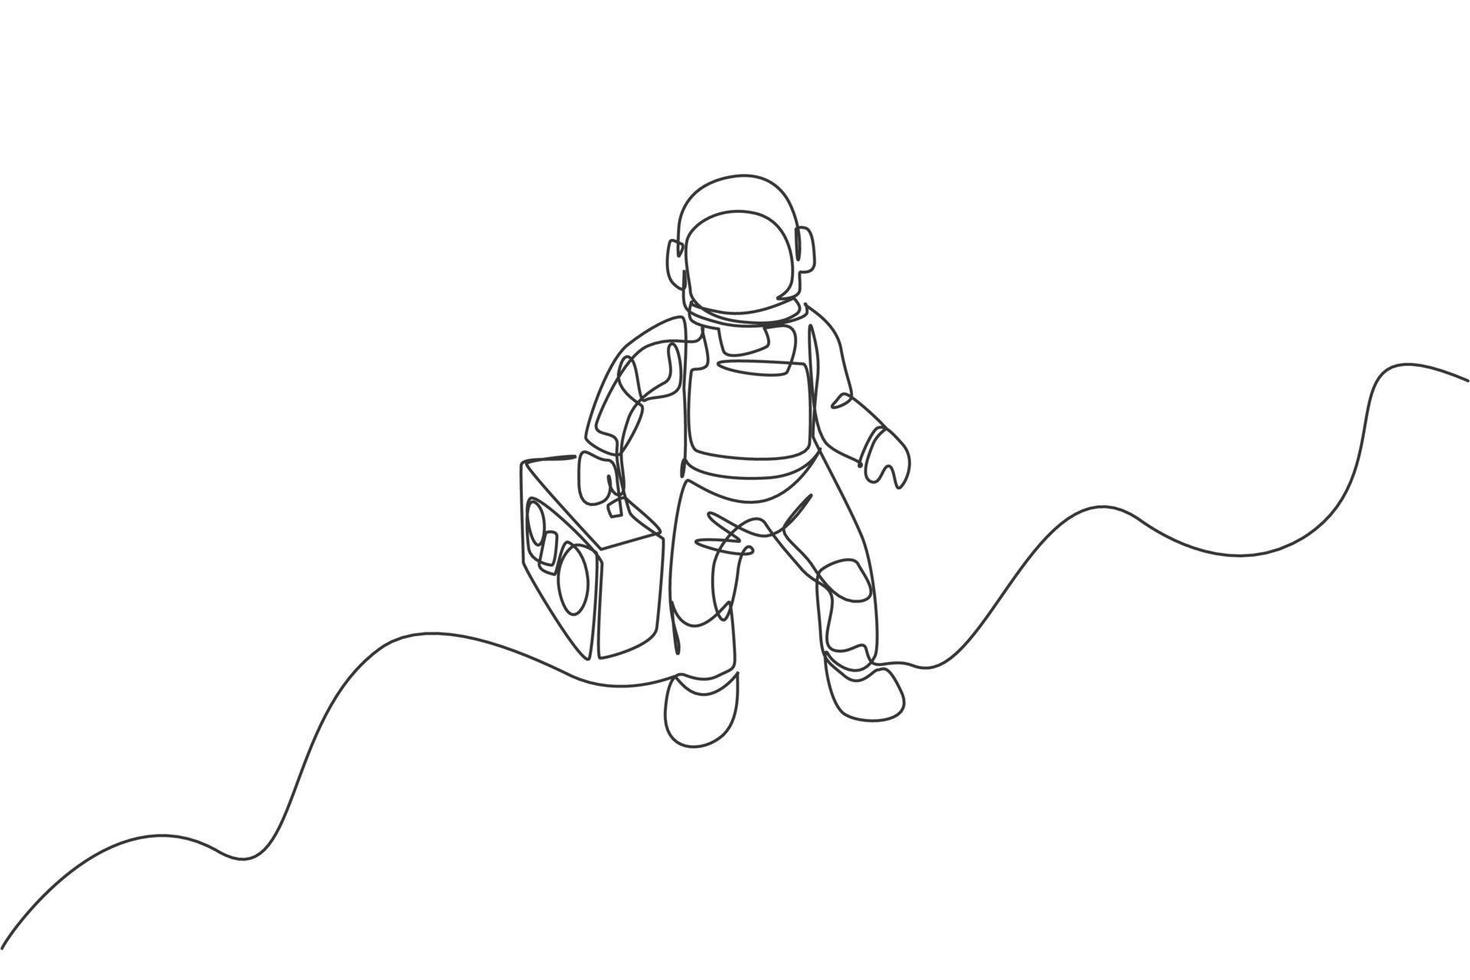 un disegno a tratteggio unico dell'astronauta che vola e porta la radio retrò nell'illustrazione grafica vettoriale dello spazio profondo. poster del concerto di musica con il concetto di astronauta spaziale. design moderno a linea continua